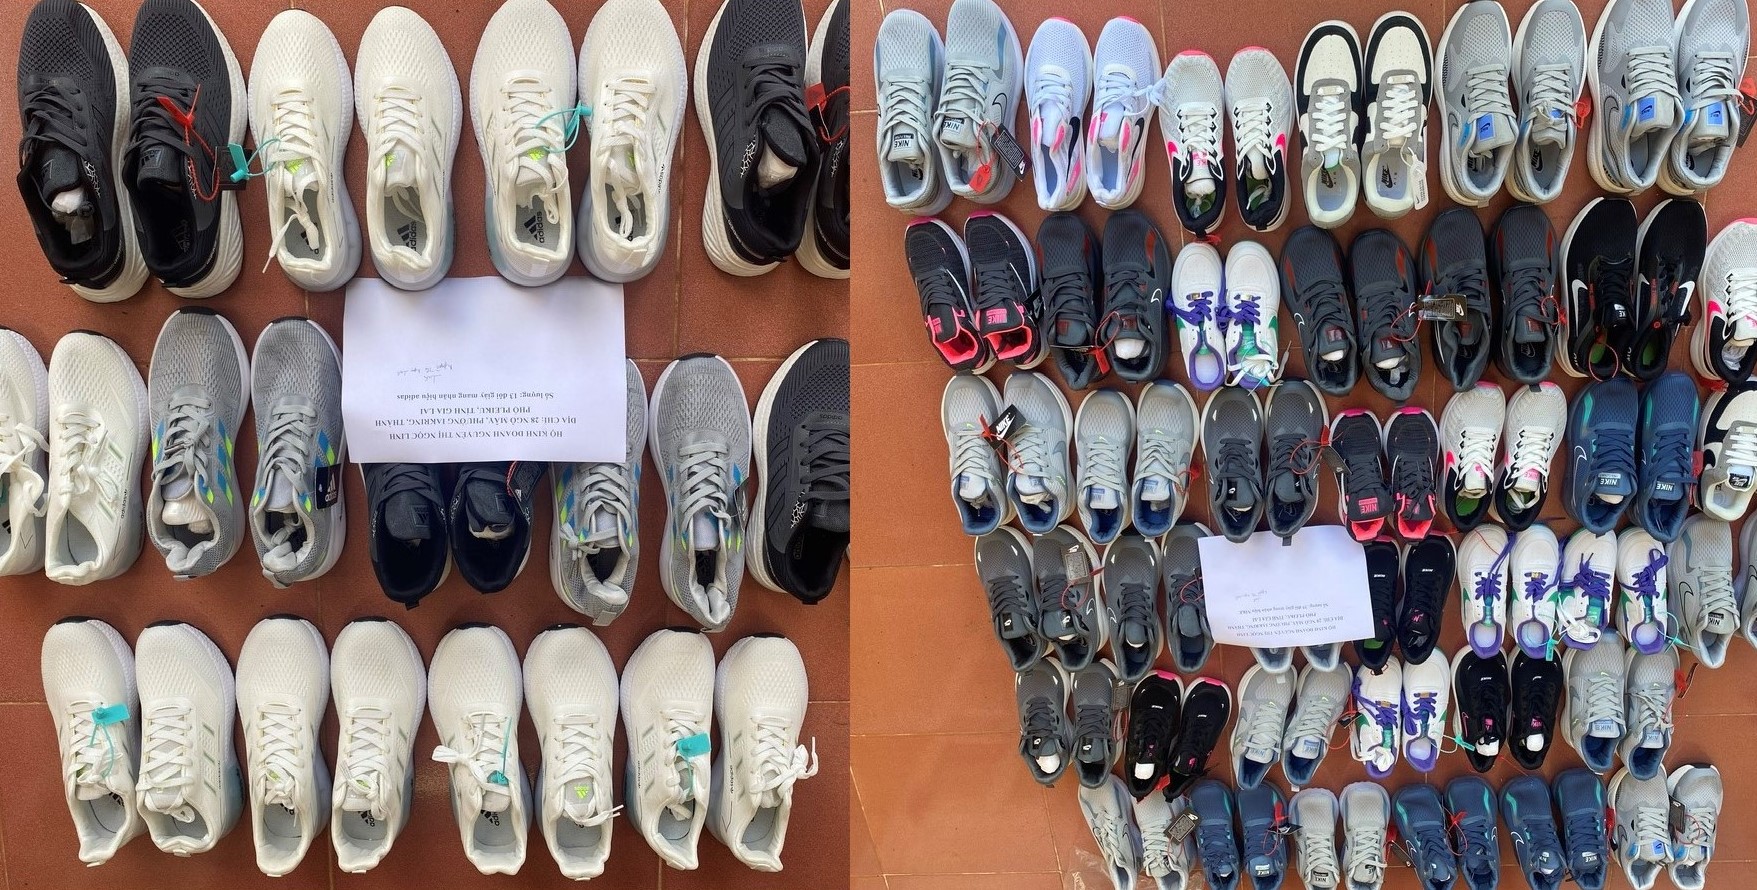 Rao bán 52 đôi giày trên Facebook, chủ hàng bị phạt 31 triệu đồng - Ảnh 2.